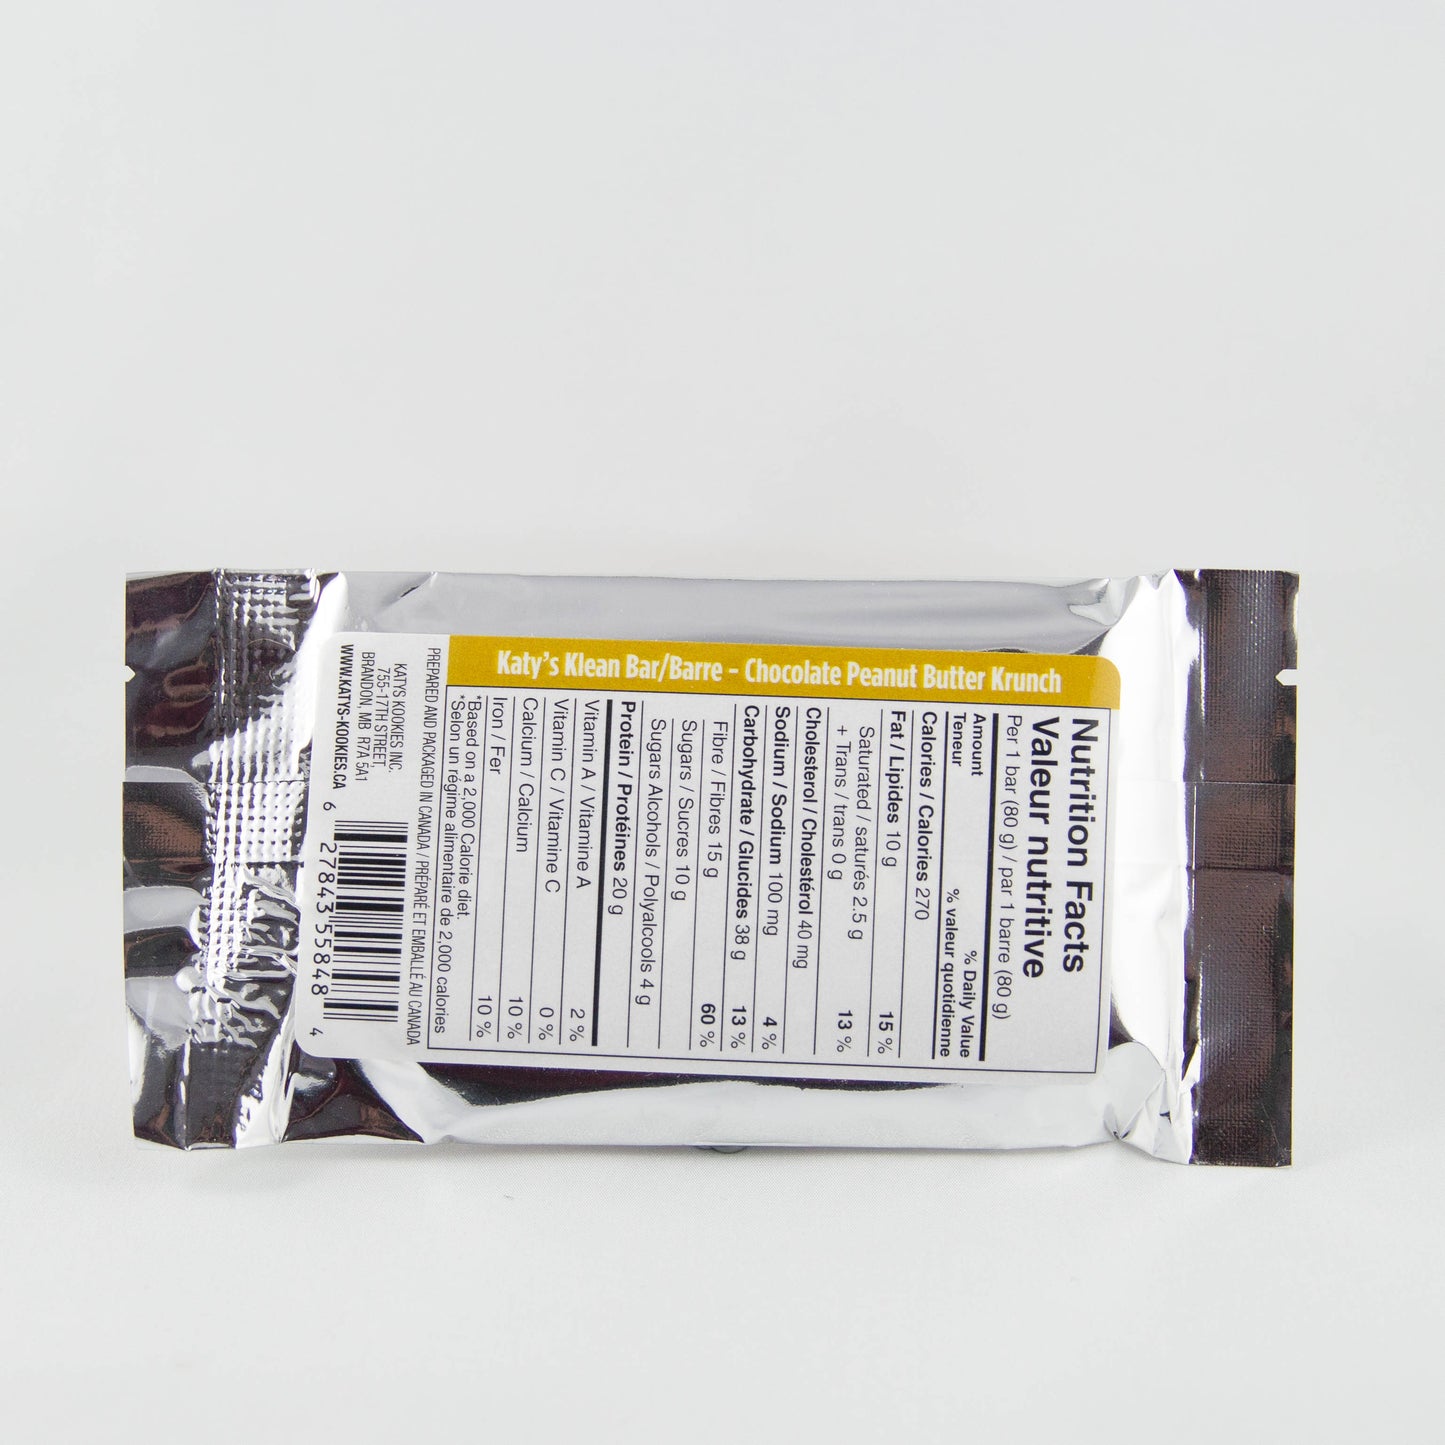 Barre Krunch Klean au chocolat et au beurre de cacahuète / Boîte de 12 barres